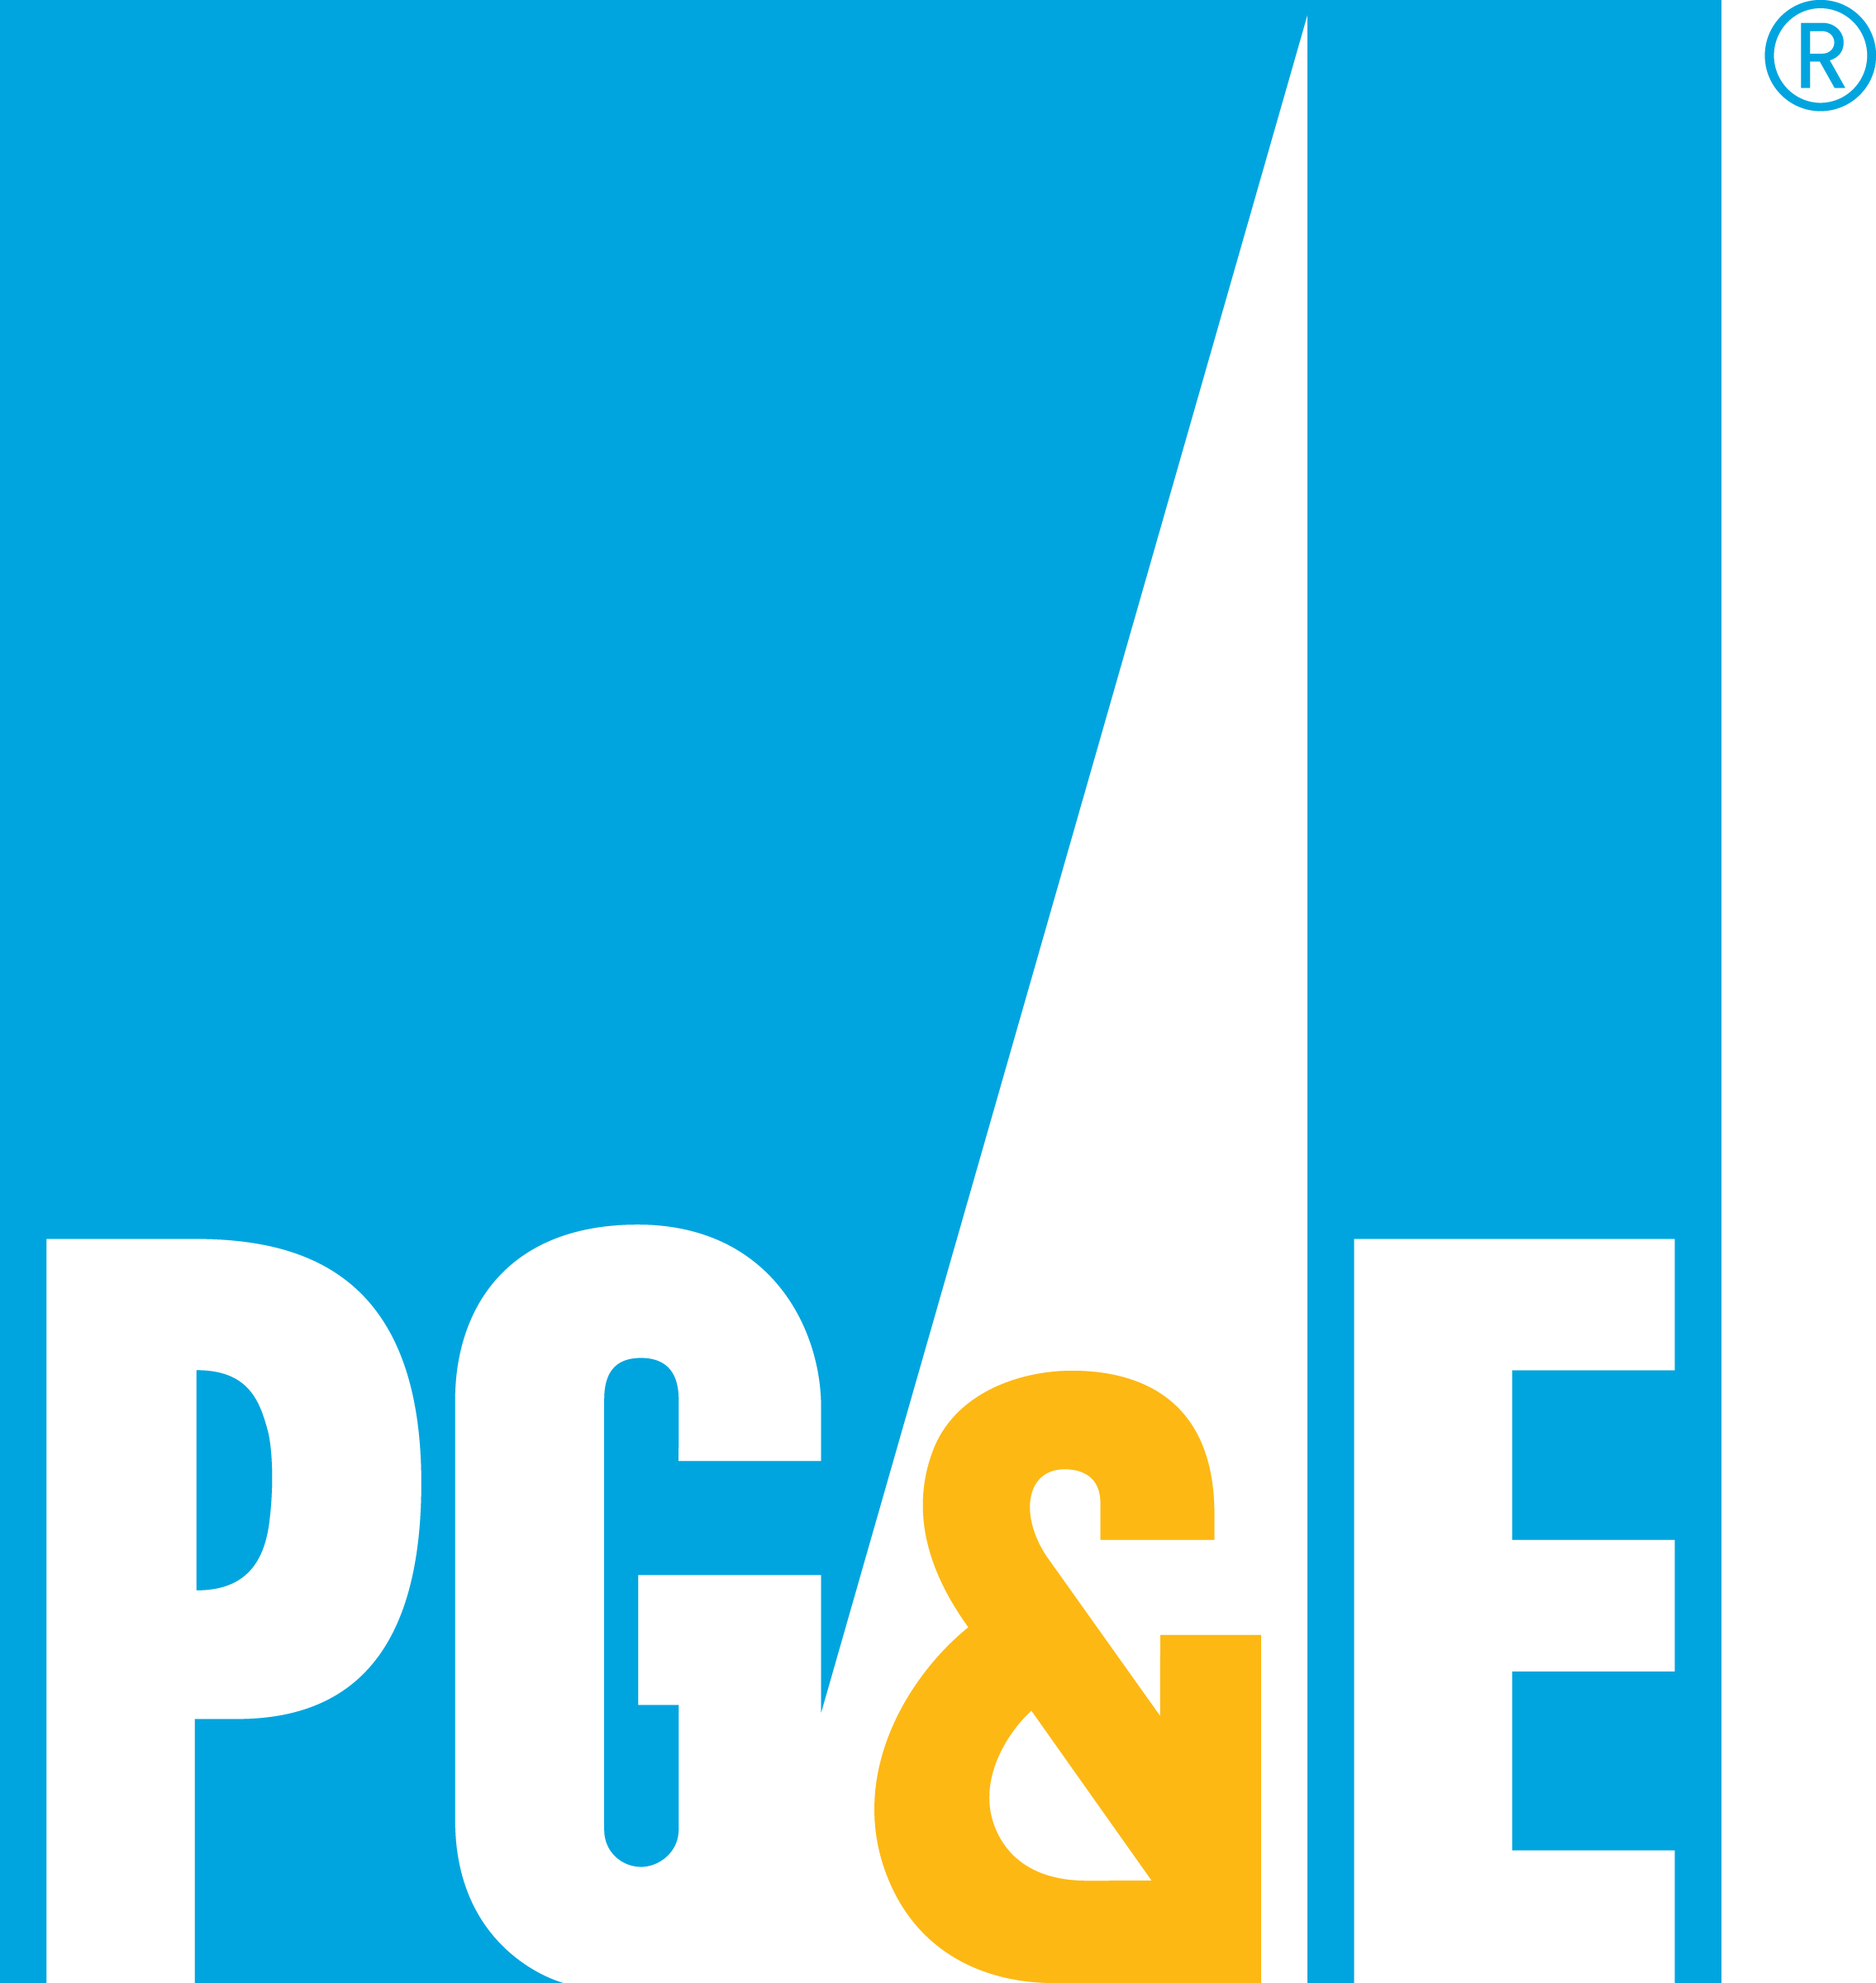 PG&E wallpaper